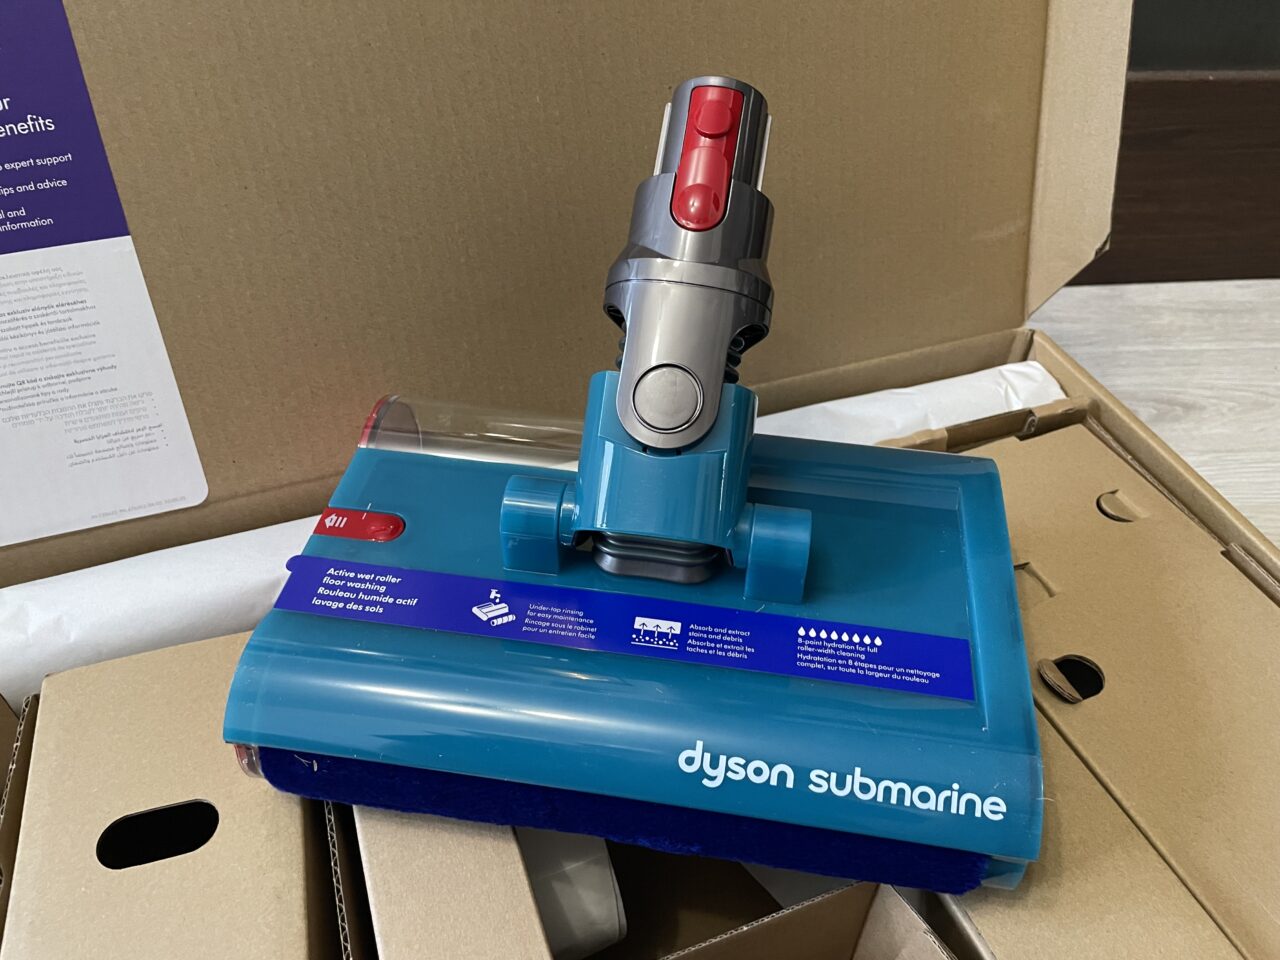 Niebieska szczotka elektryczna do odkurzacza marki Dyson oznaczona jako "submarine", wyjęta z kartonowego opakowania.